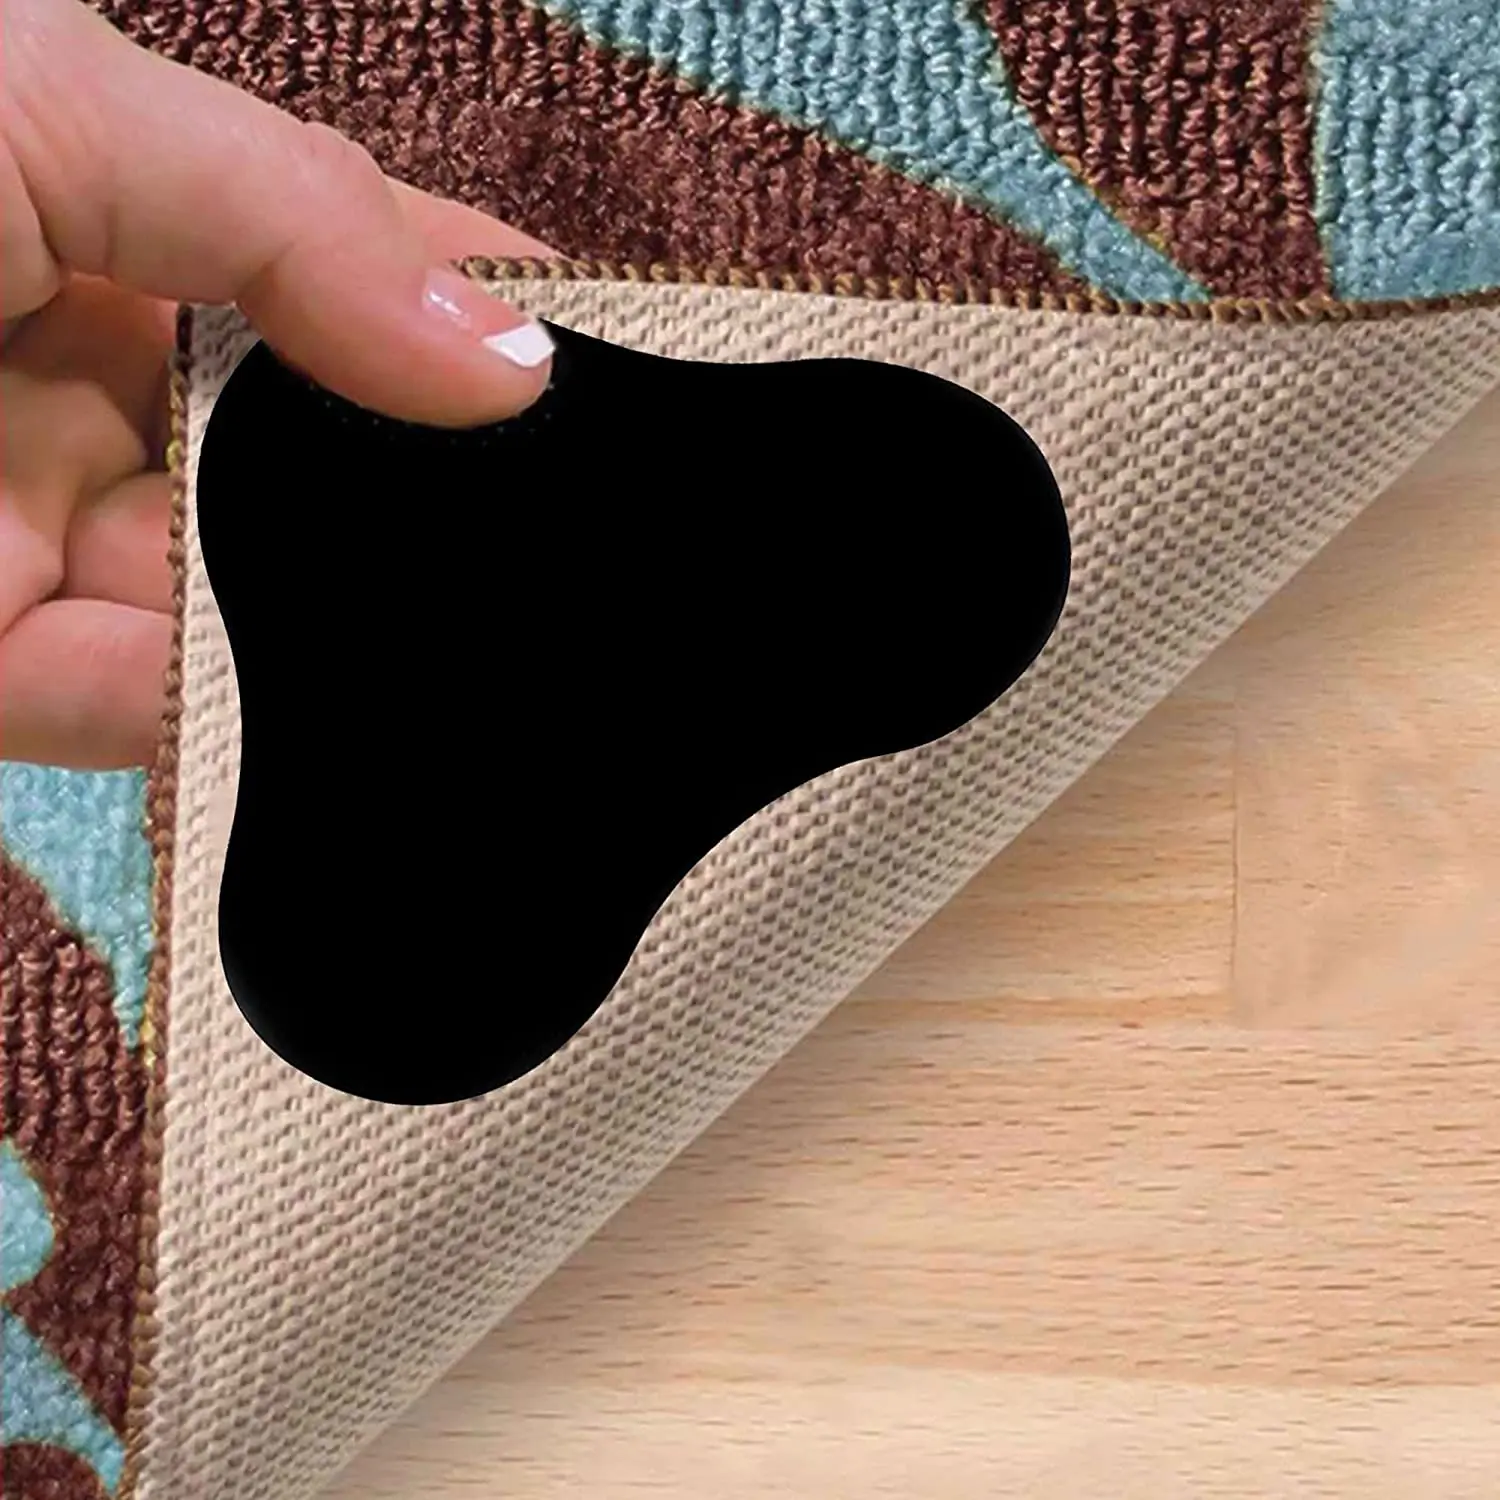 Фото Наклейки на ковровое покрытие с противоскользящим внешним видом делают уголки